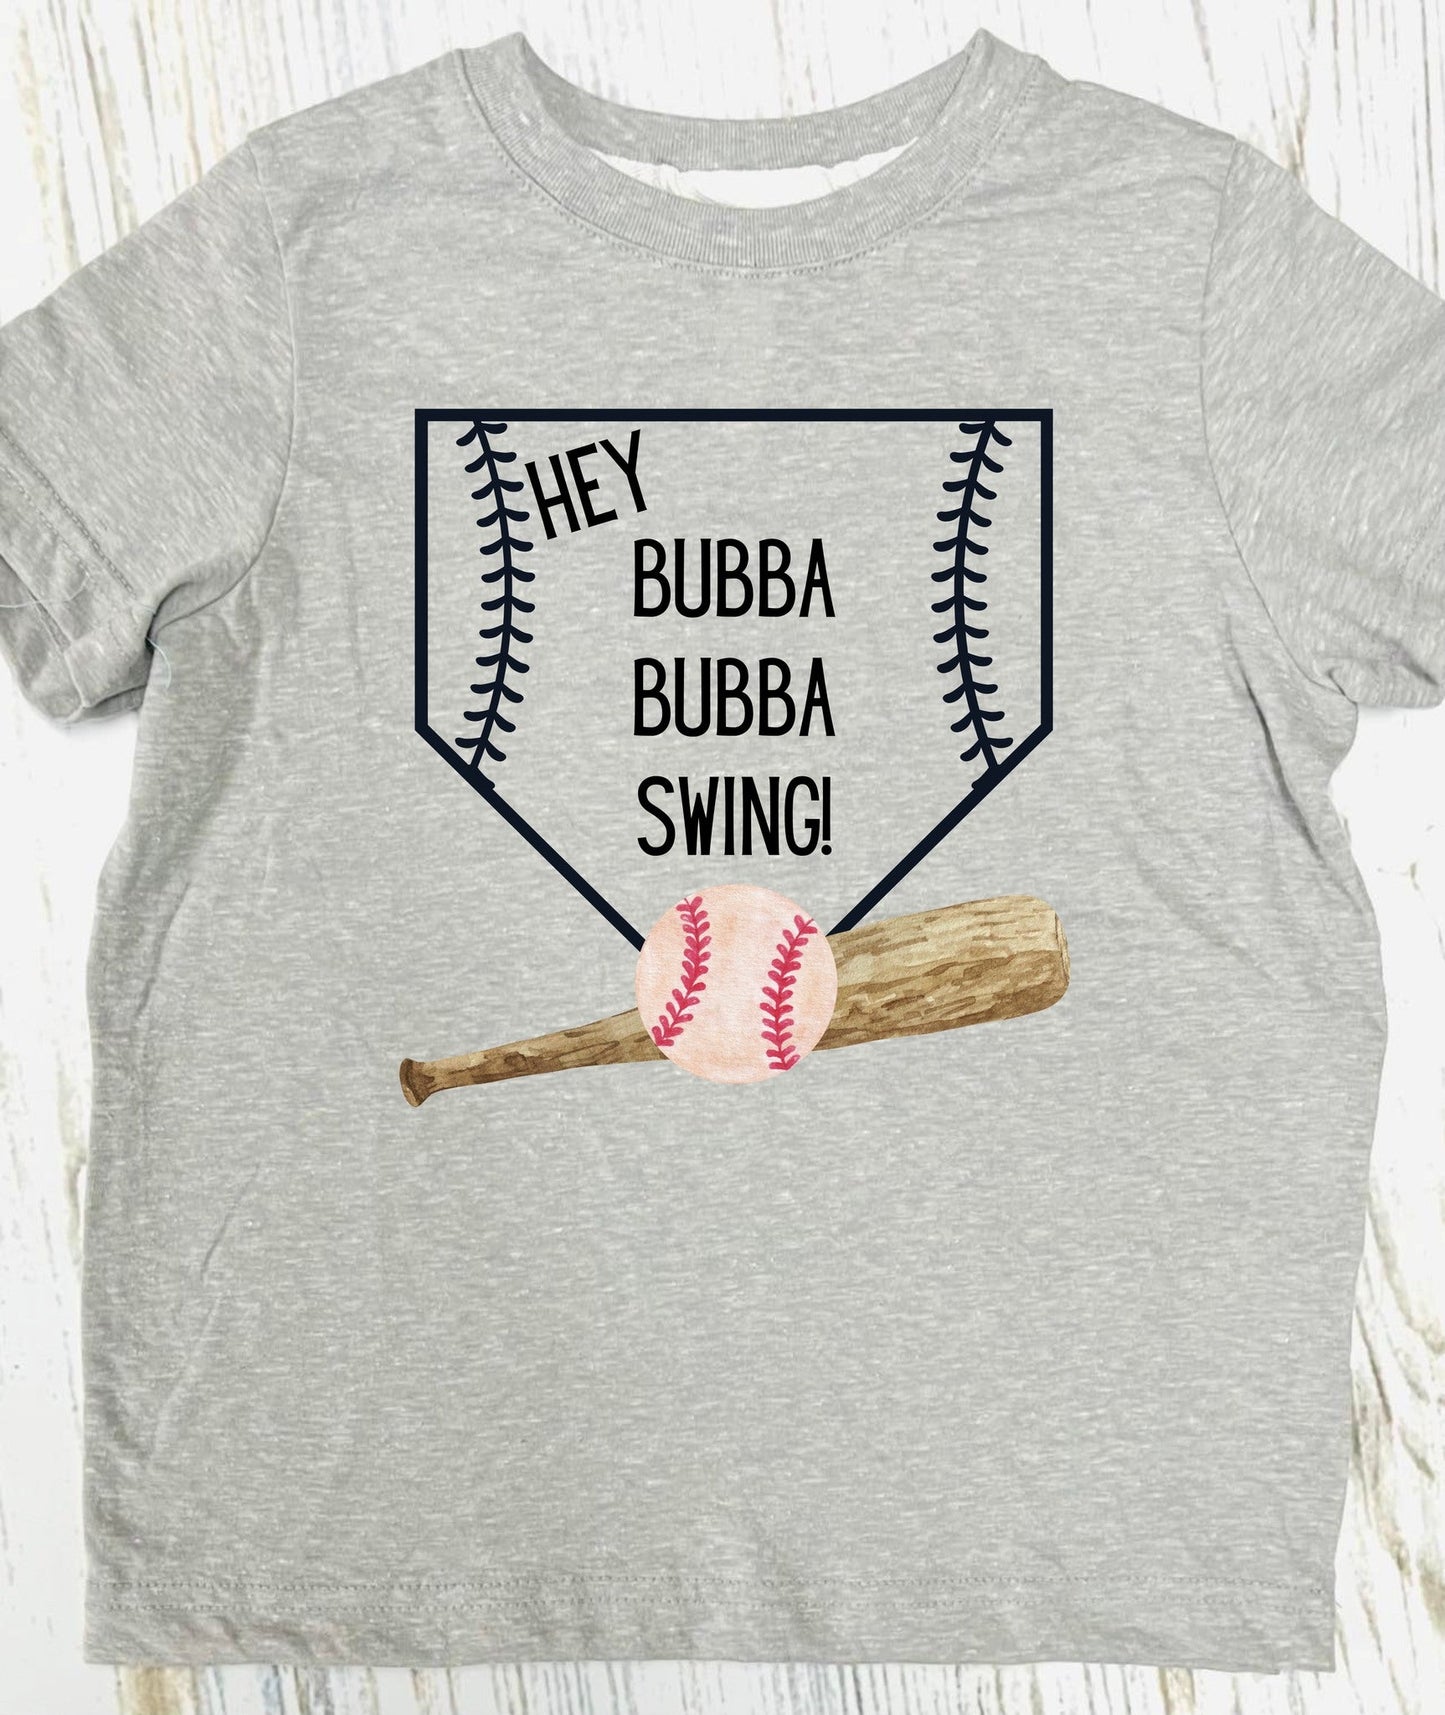 Hey Bubba/Sissy Swing